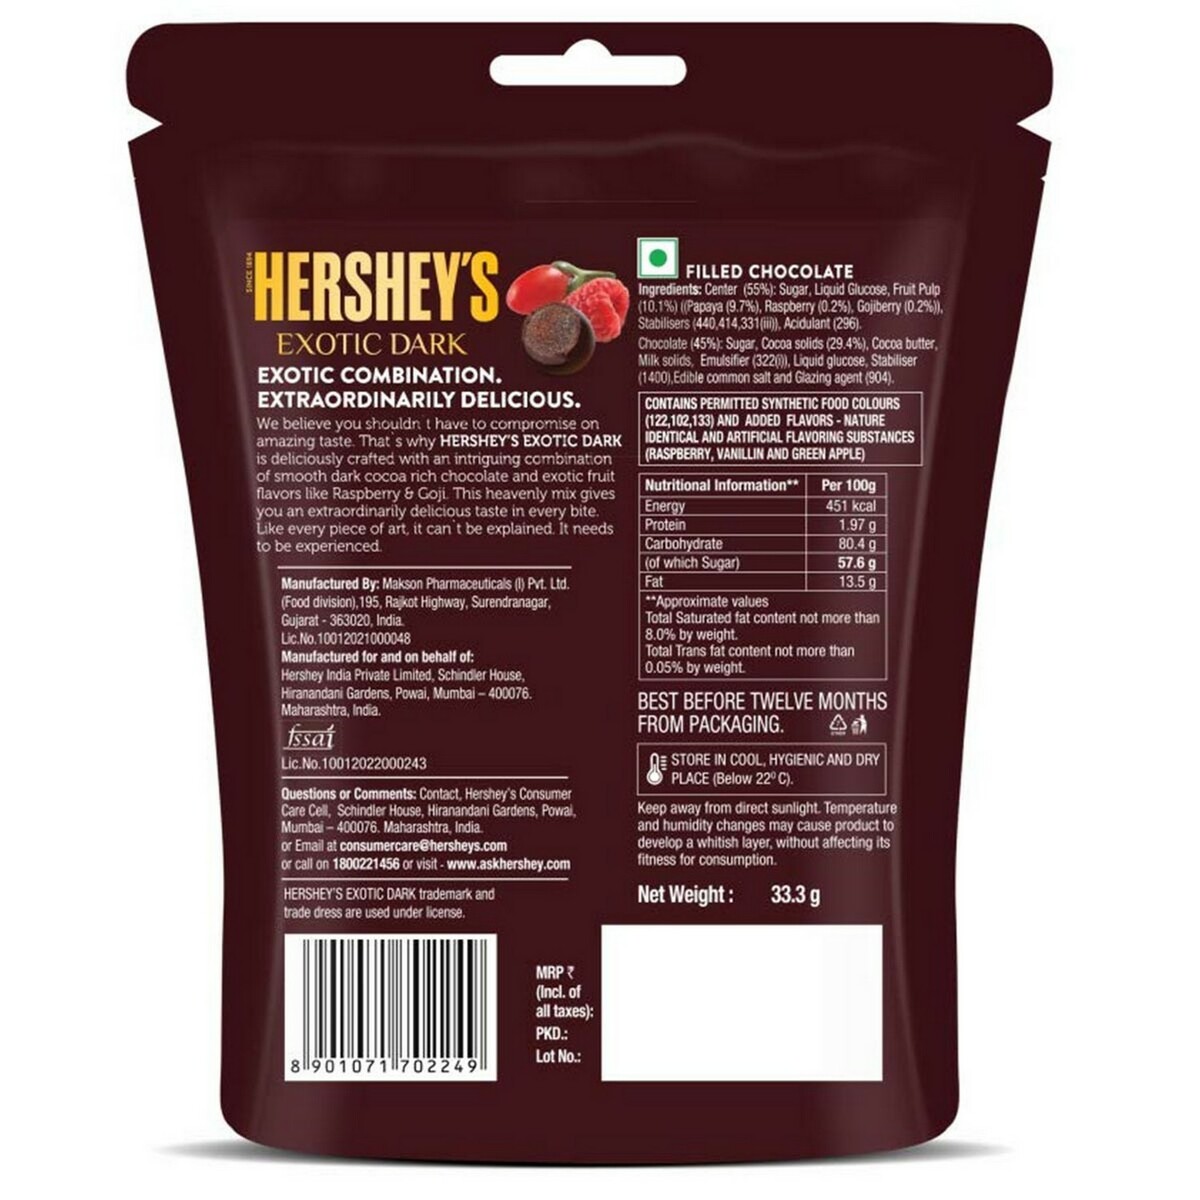 Hershey's Dark Chocolate  Raspberry & Goji 33.3g